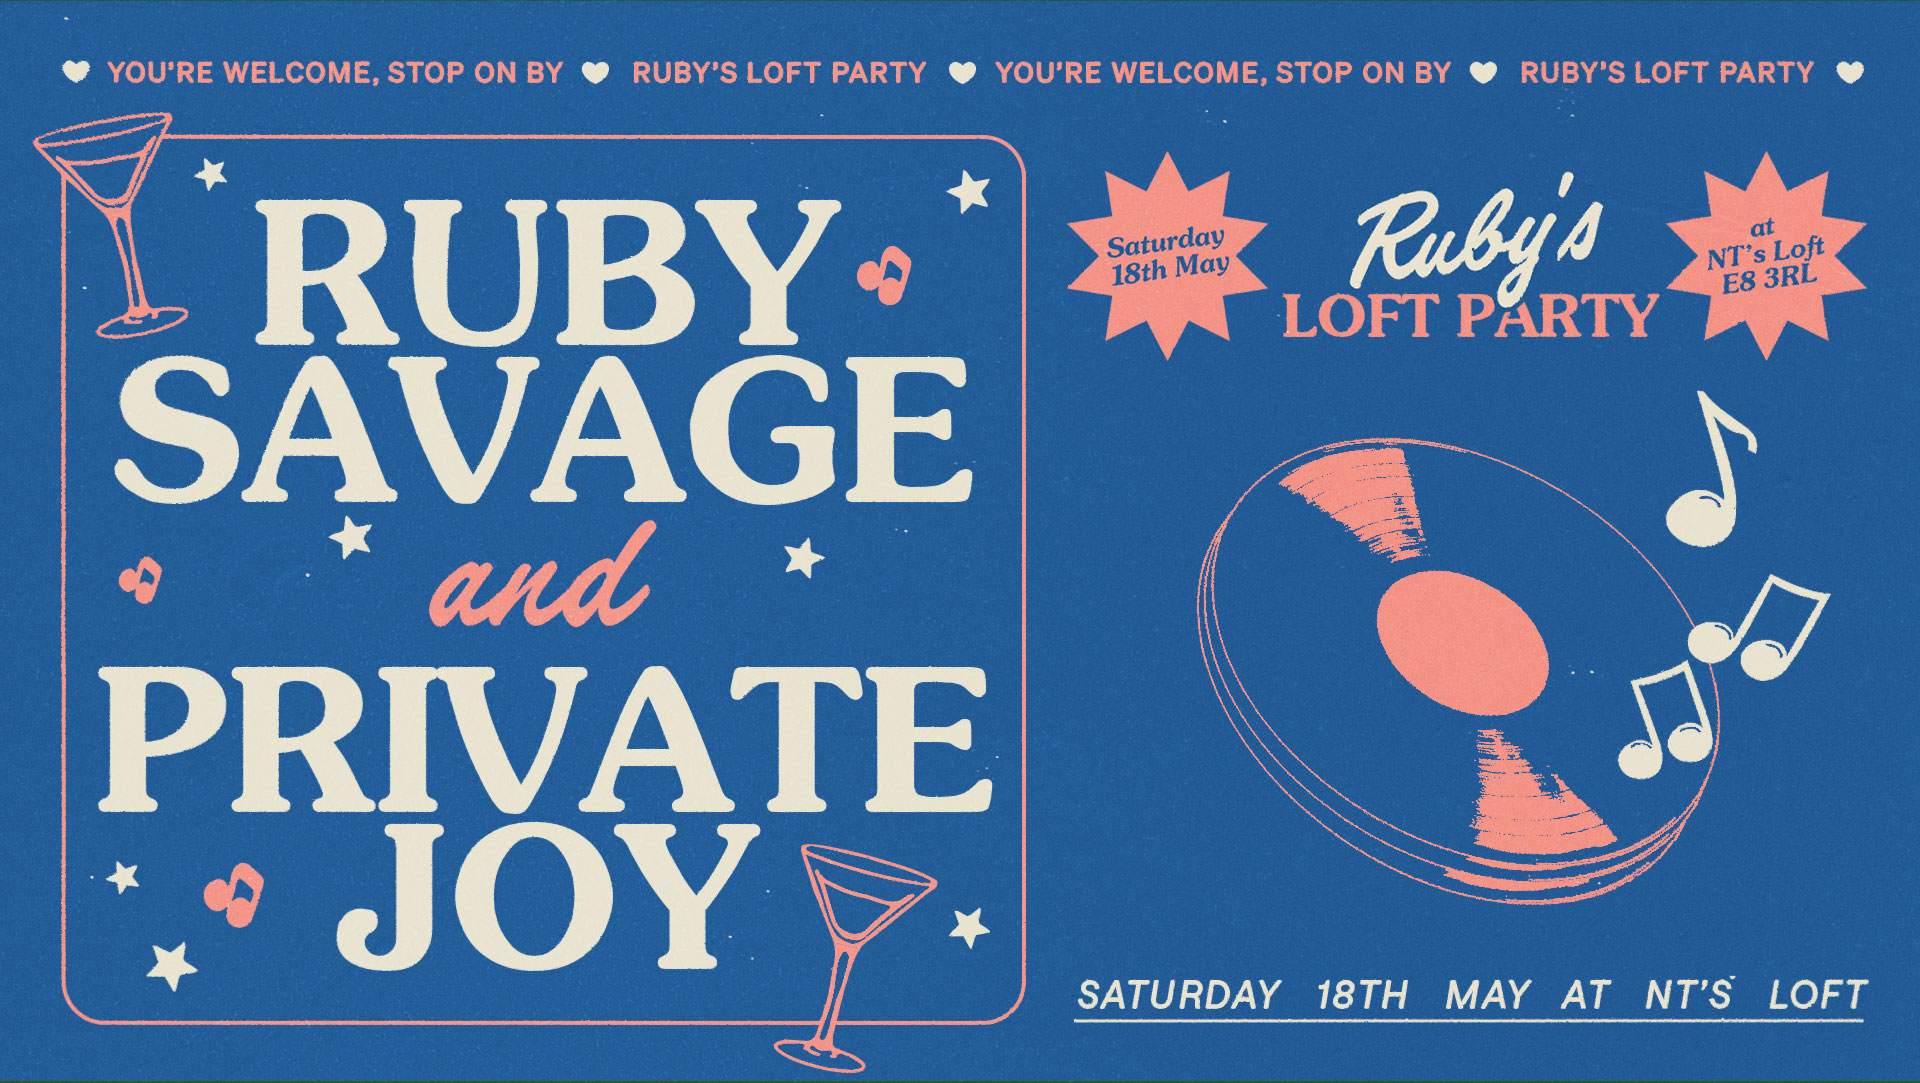 NT's Loft: Ruby Savage Residency - with Private Joy - Week 3 - Página frontal